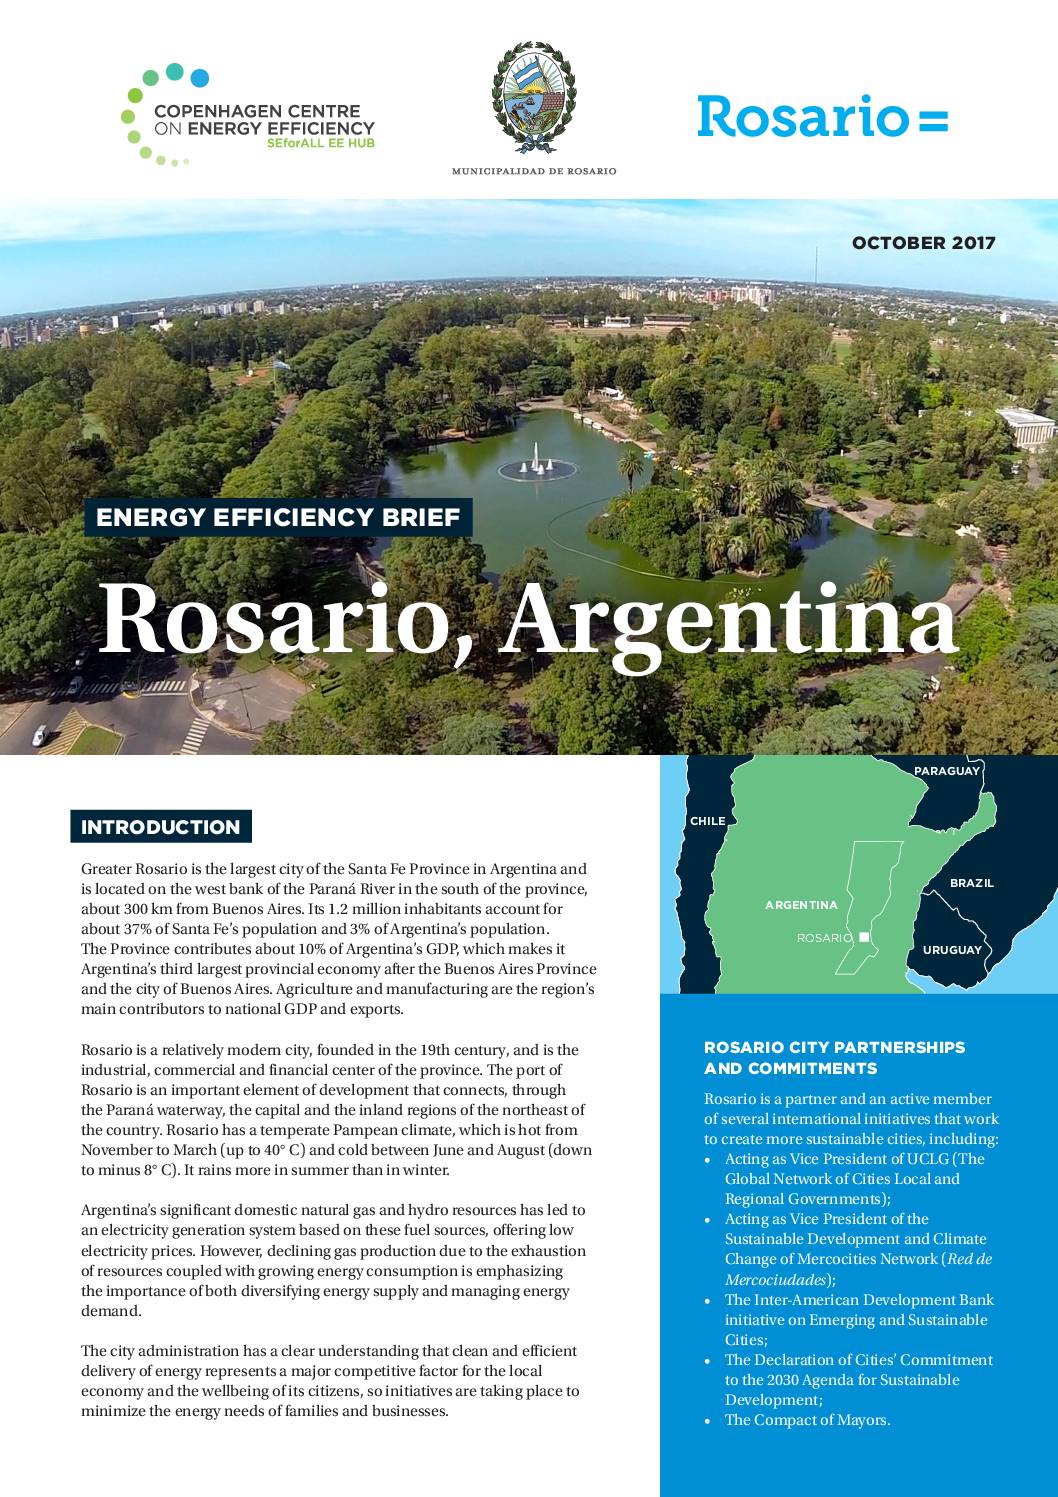 Energy Efficiency Brief, Rosario-Argentina